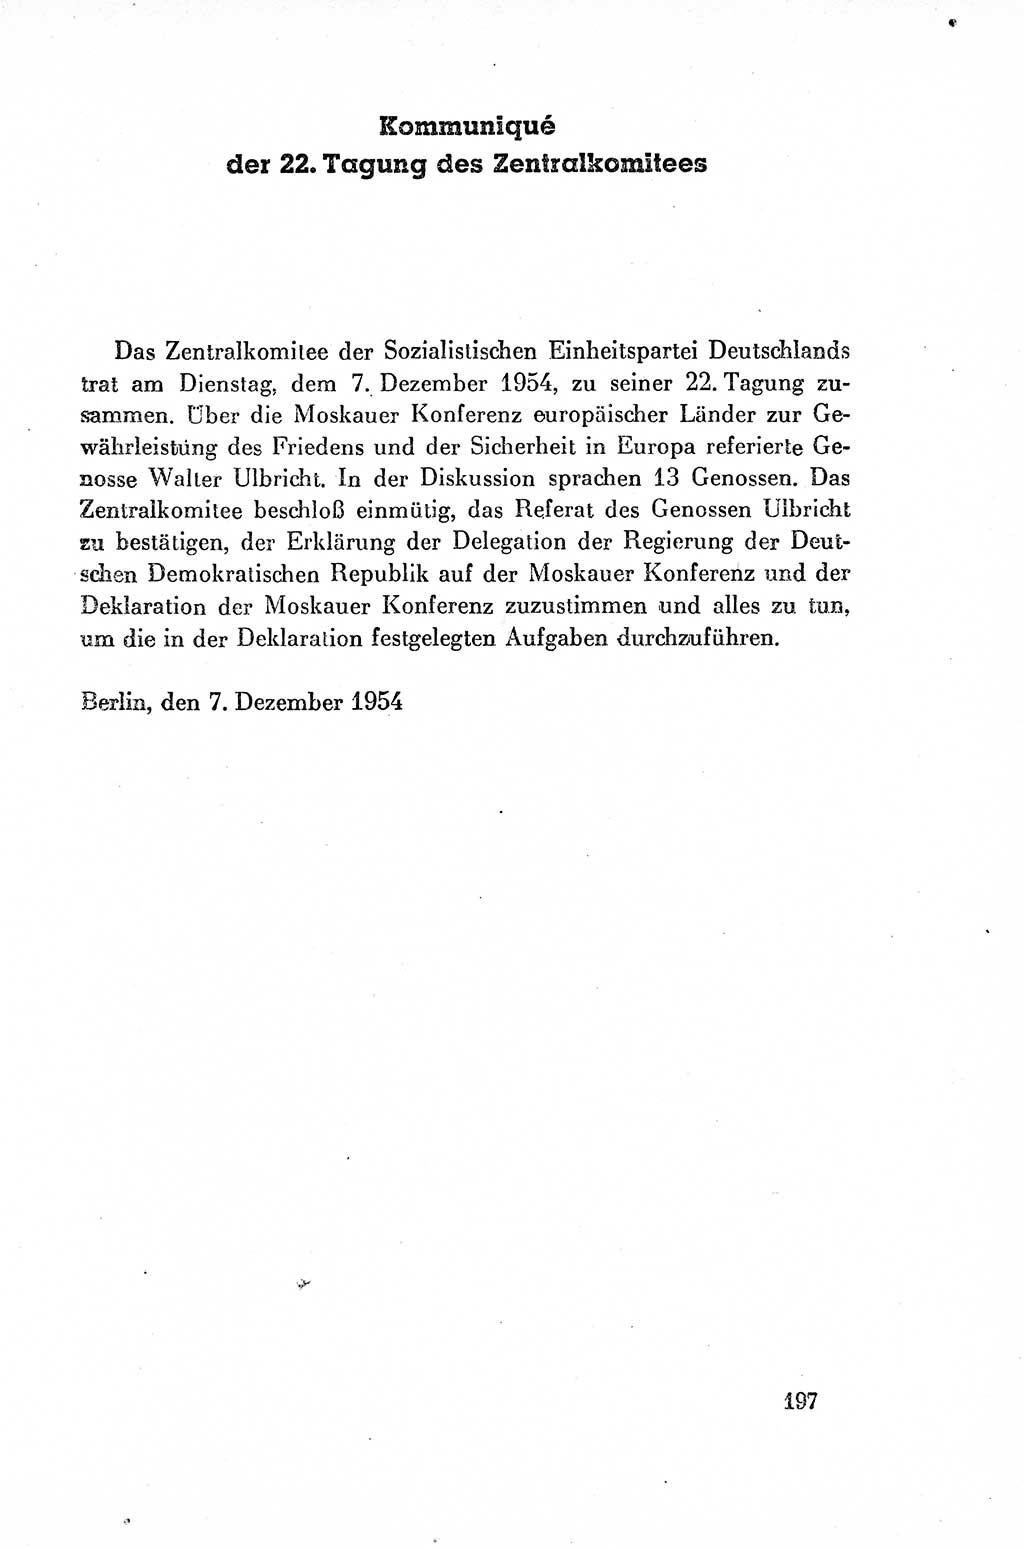 Dokumente der Sozialistischen Einheitspartei Deutschlands (SED) [Deutsche Demokratische Republik (DDR)] 1954-1955, Seite 197 (Dok. SED DDR 1954-1955, S. 197)